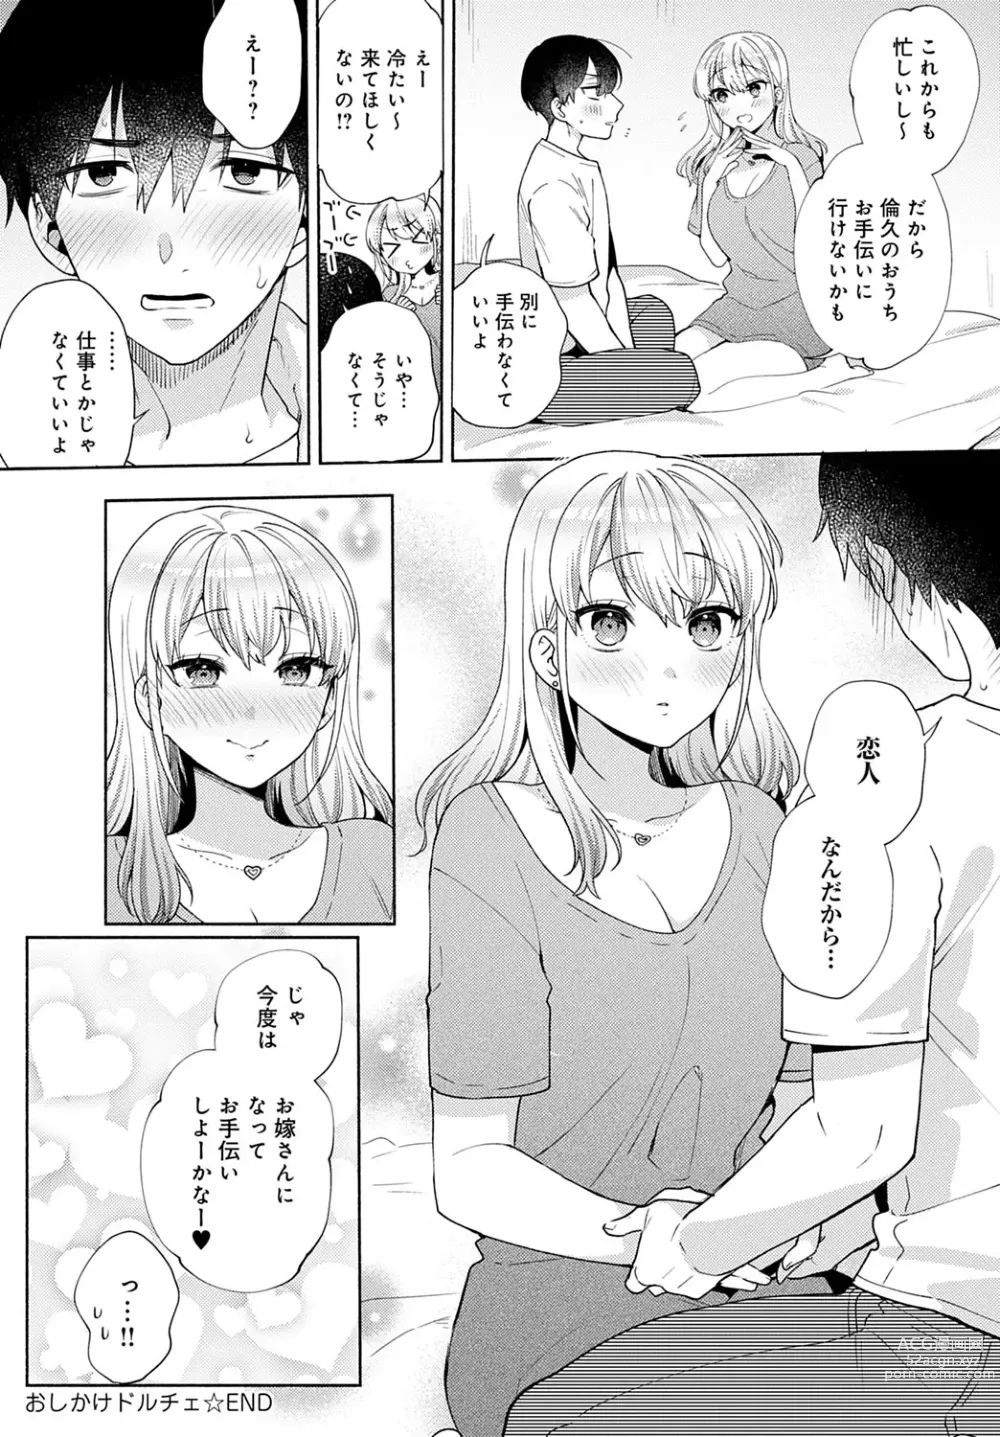 Page 108 of manga Oshikake Dolce